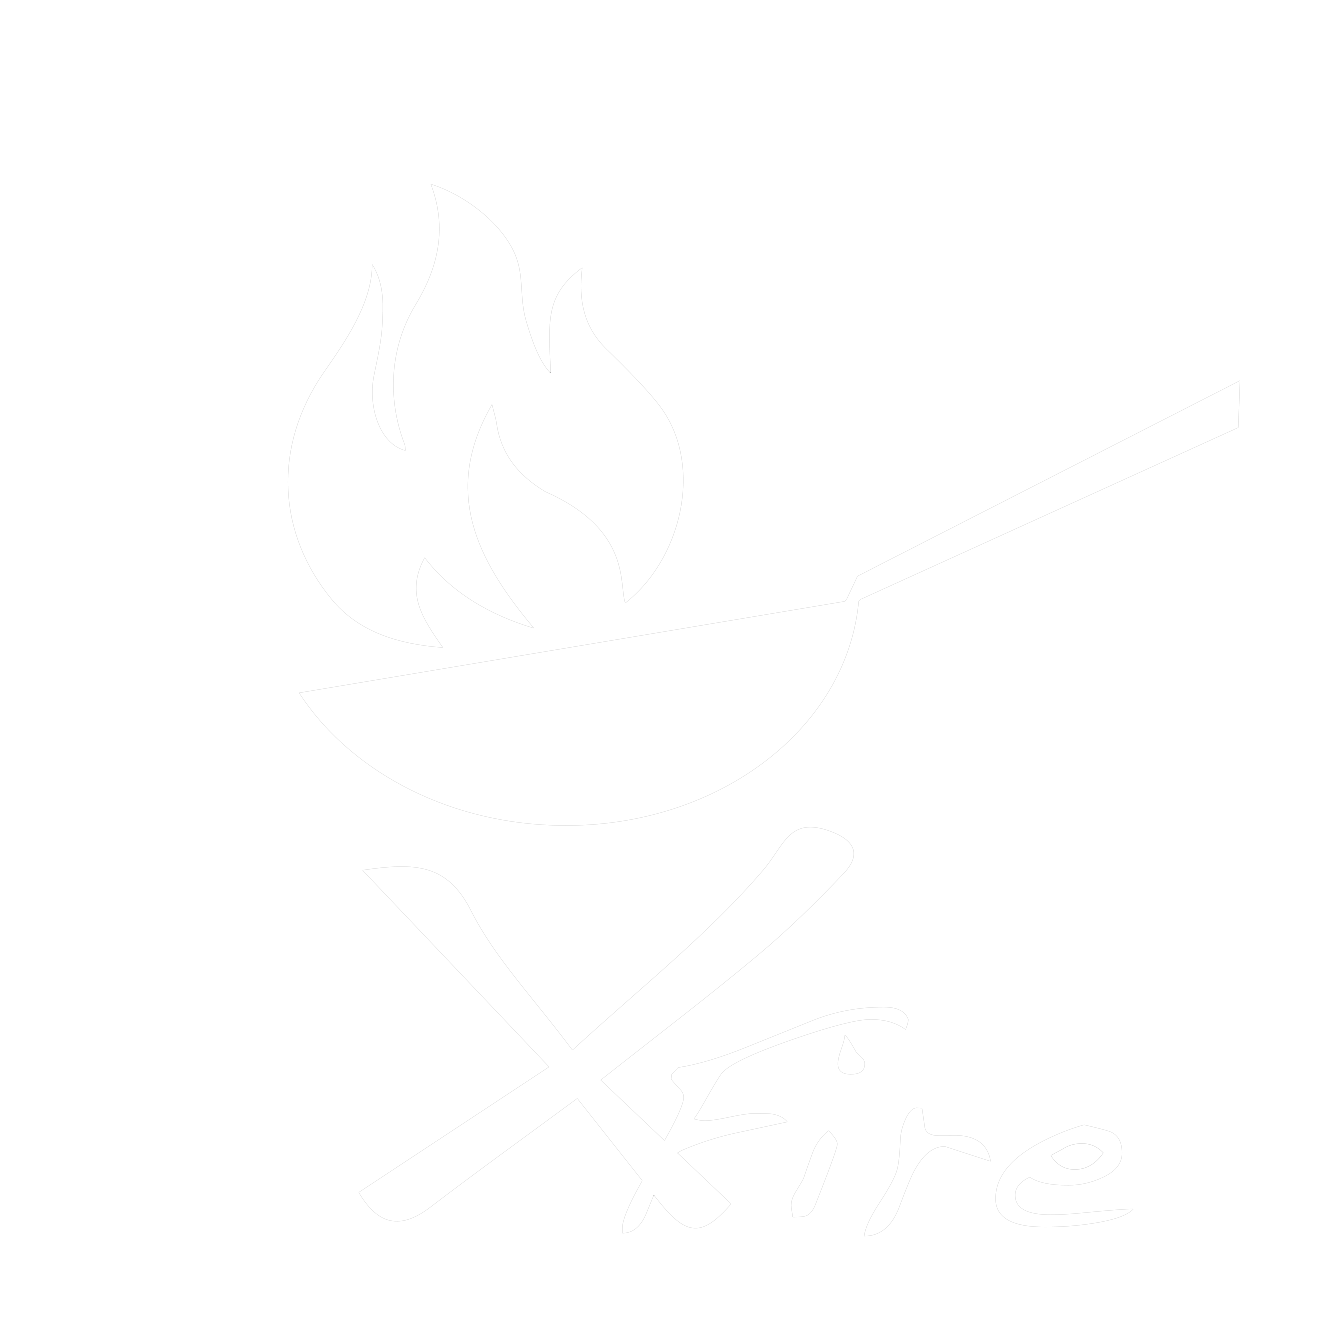 Xfire